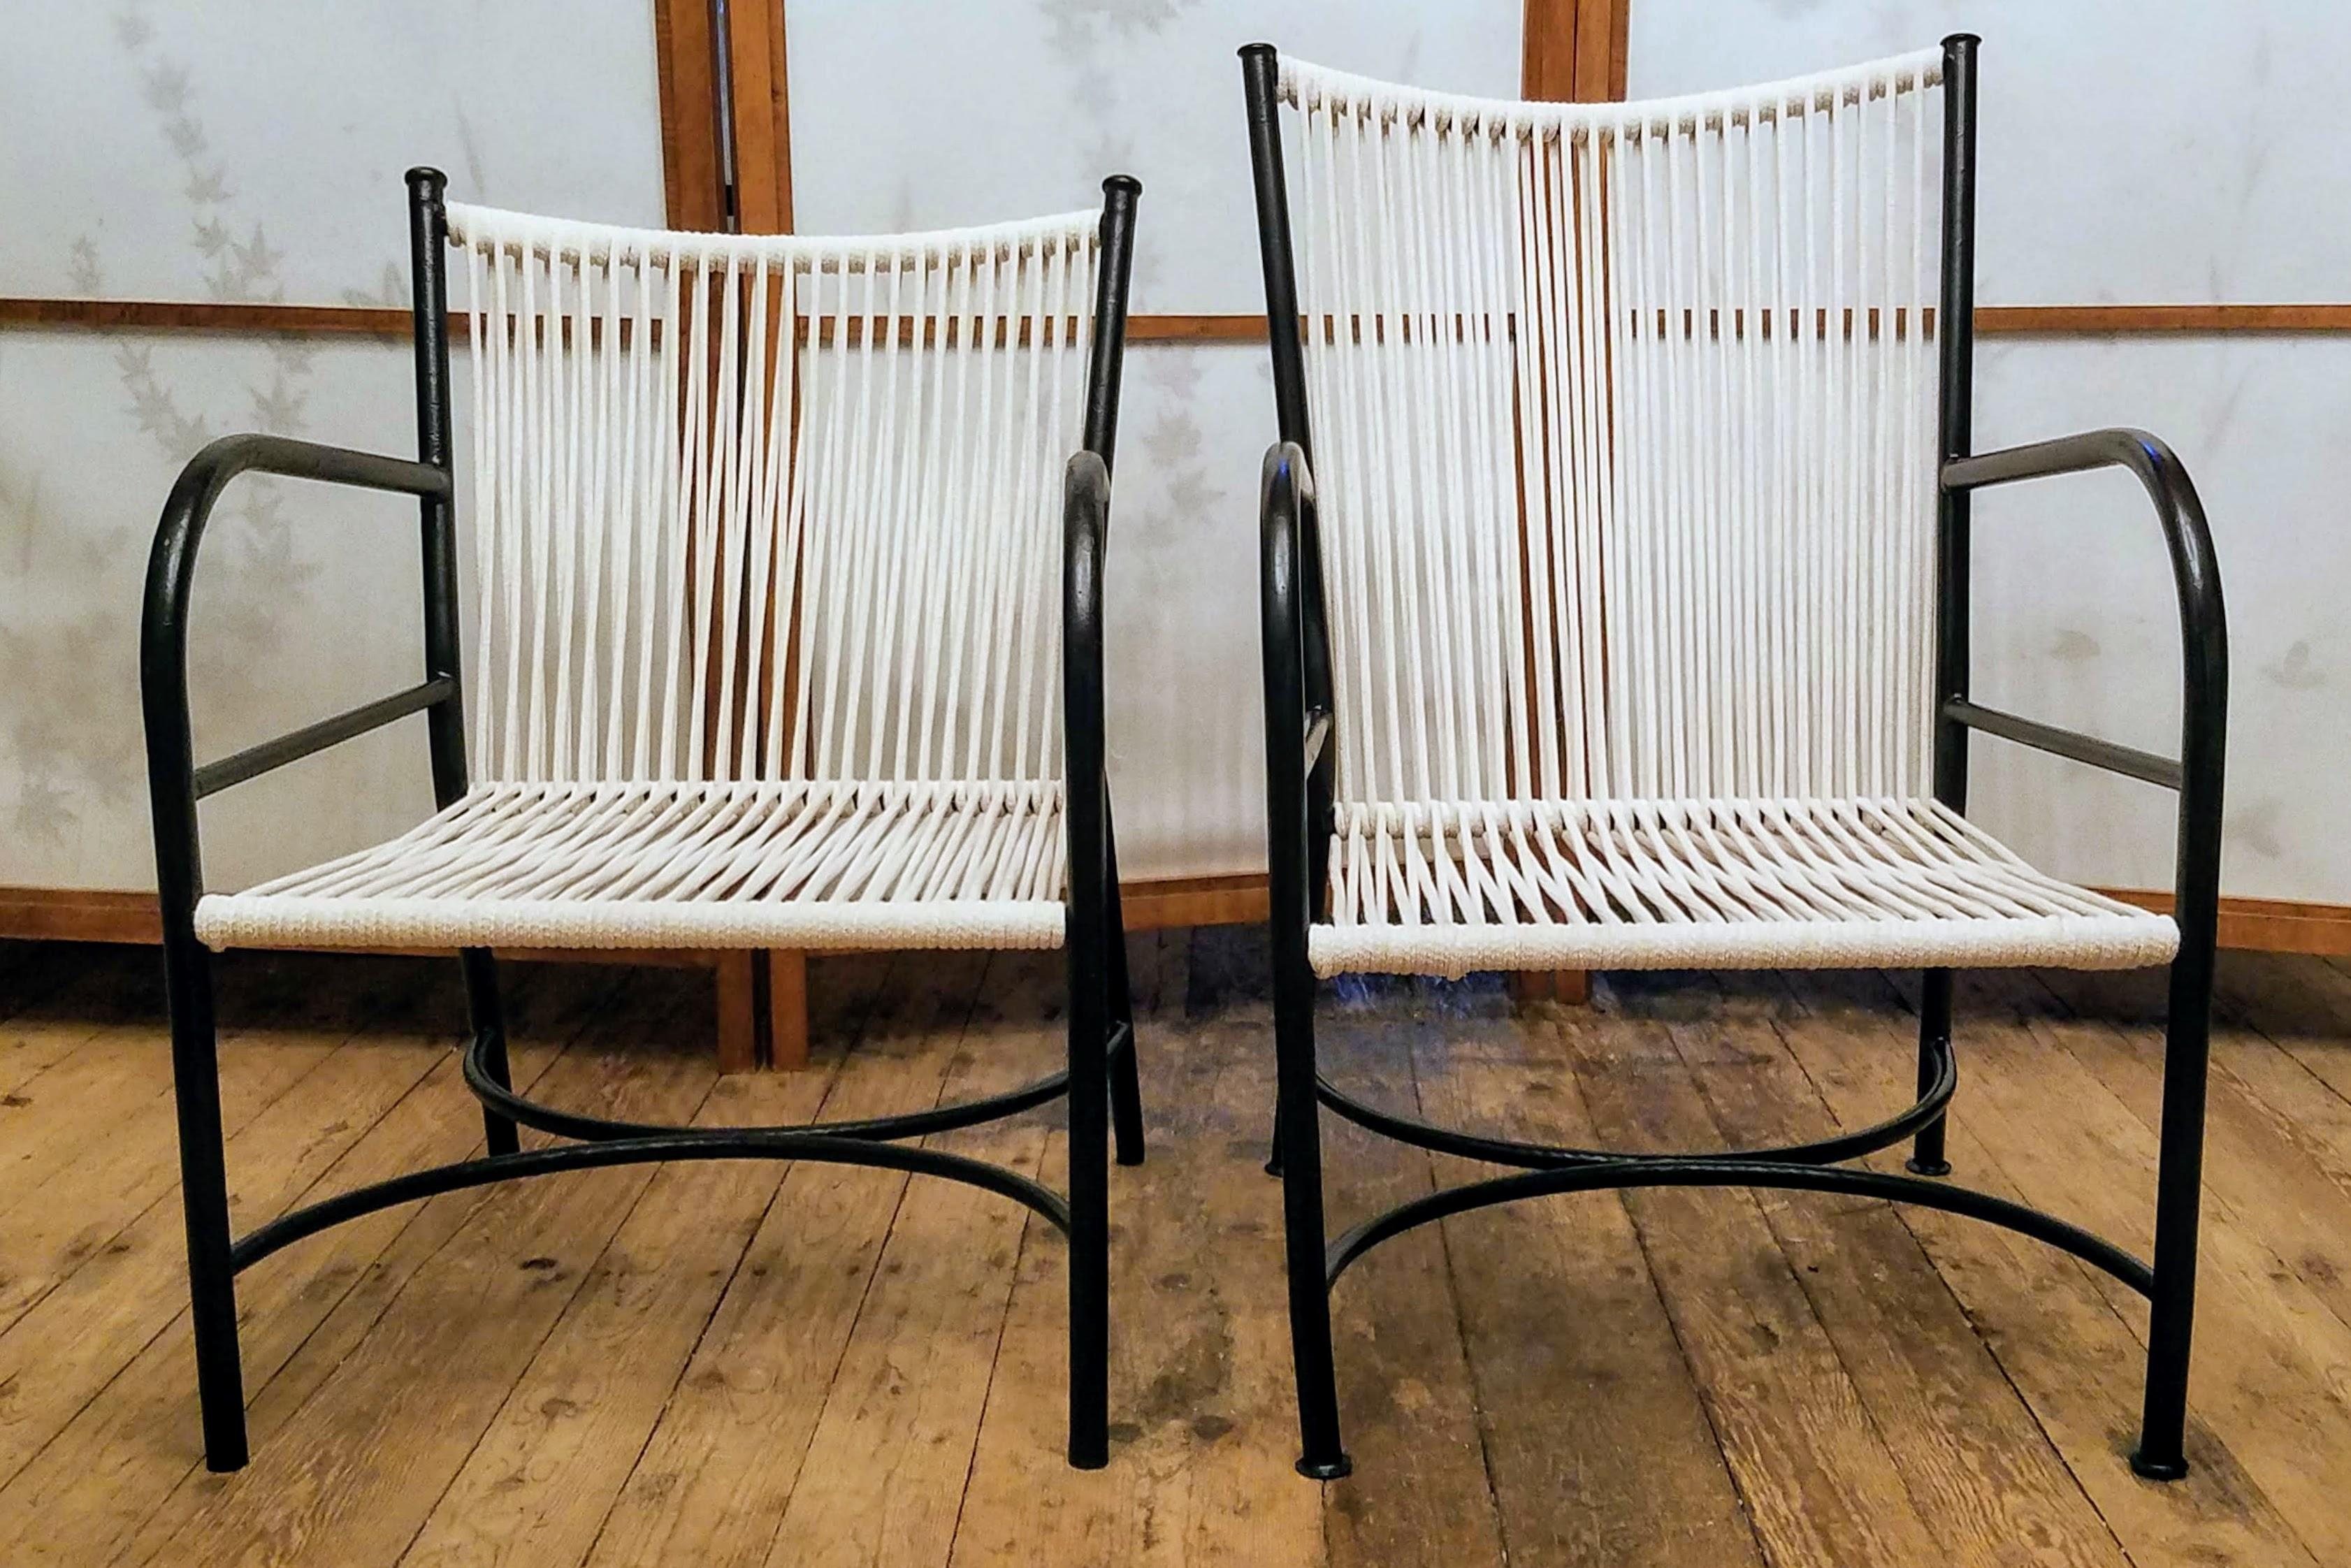 Suite de quatre chaises longues fabriquées à la main par Robert Lewis dans son studio situé sous Old Mission Santa Barbara à Santa Barbara, en Californie, dans les années 1930.
Trois des quatre chaises ont des dossiers assortis de 29,5 pouces de